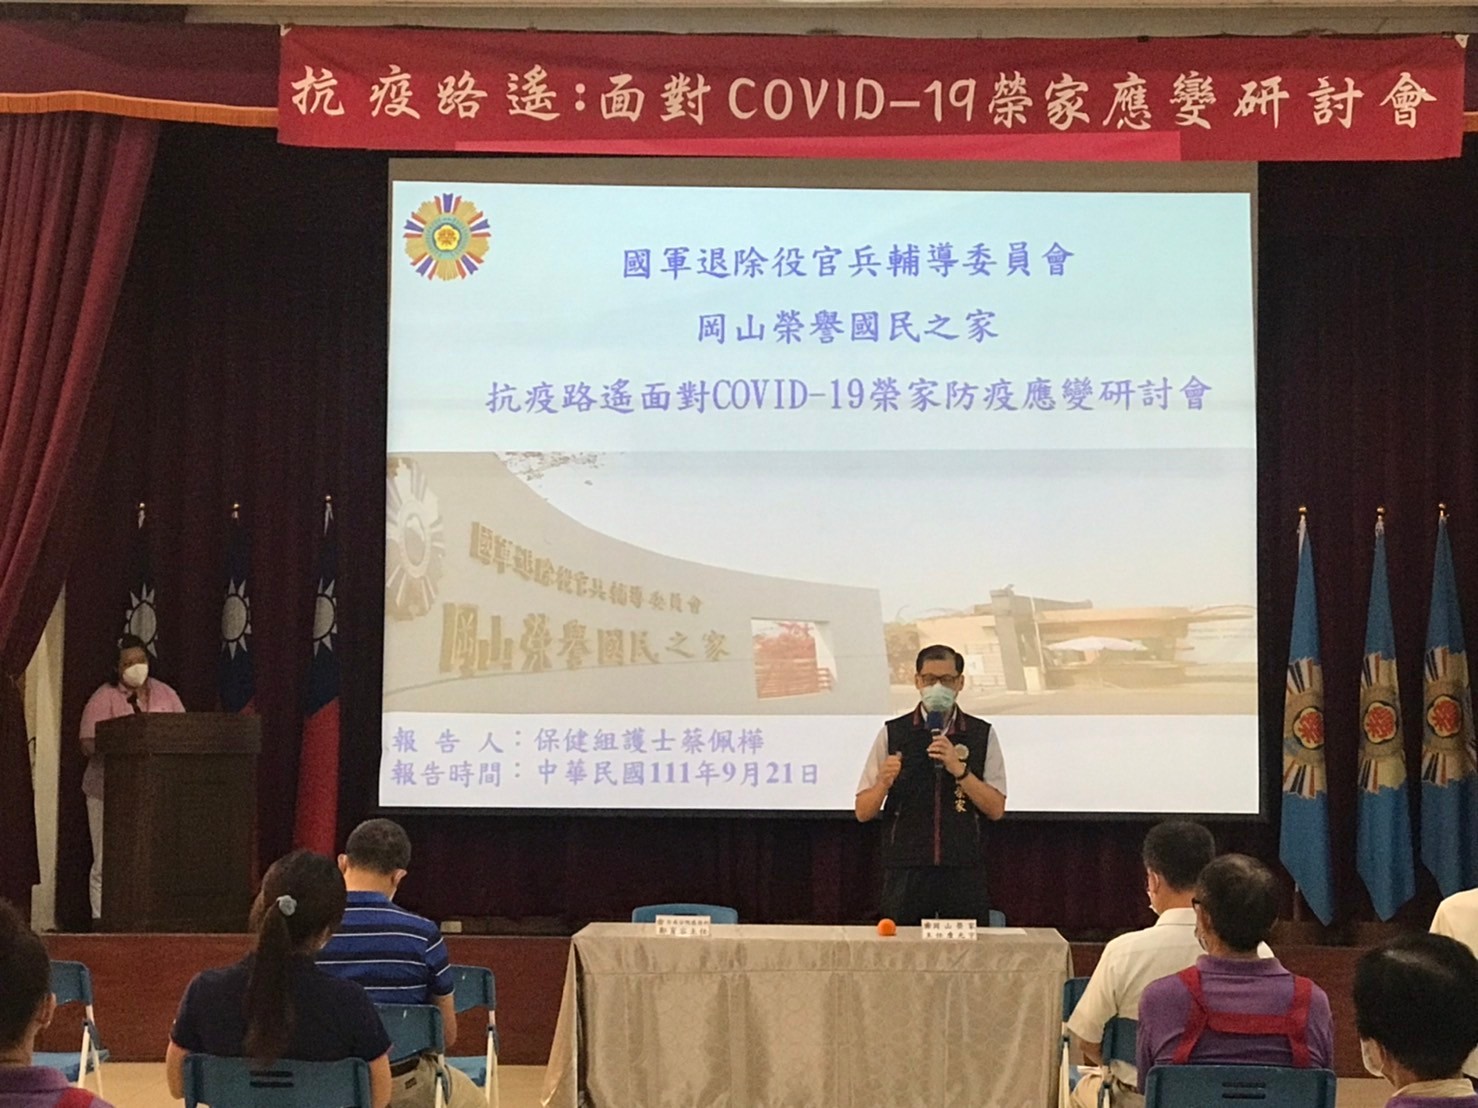 岡山榮家:抗疫路遙:面對COVID-19榮家防疫應變研討會